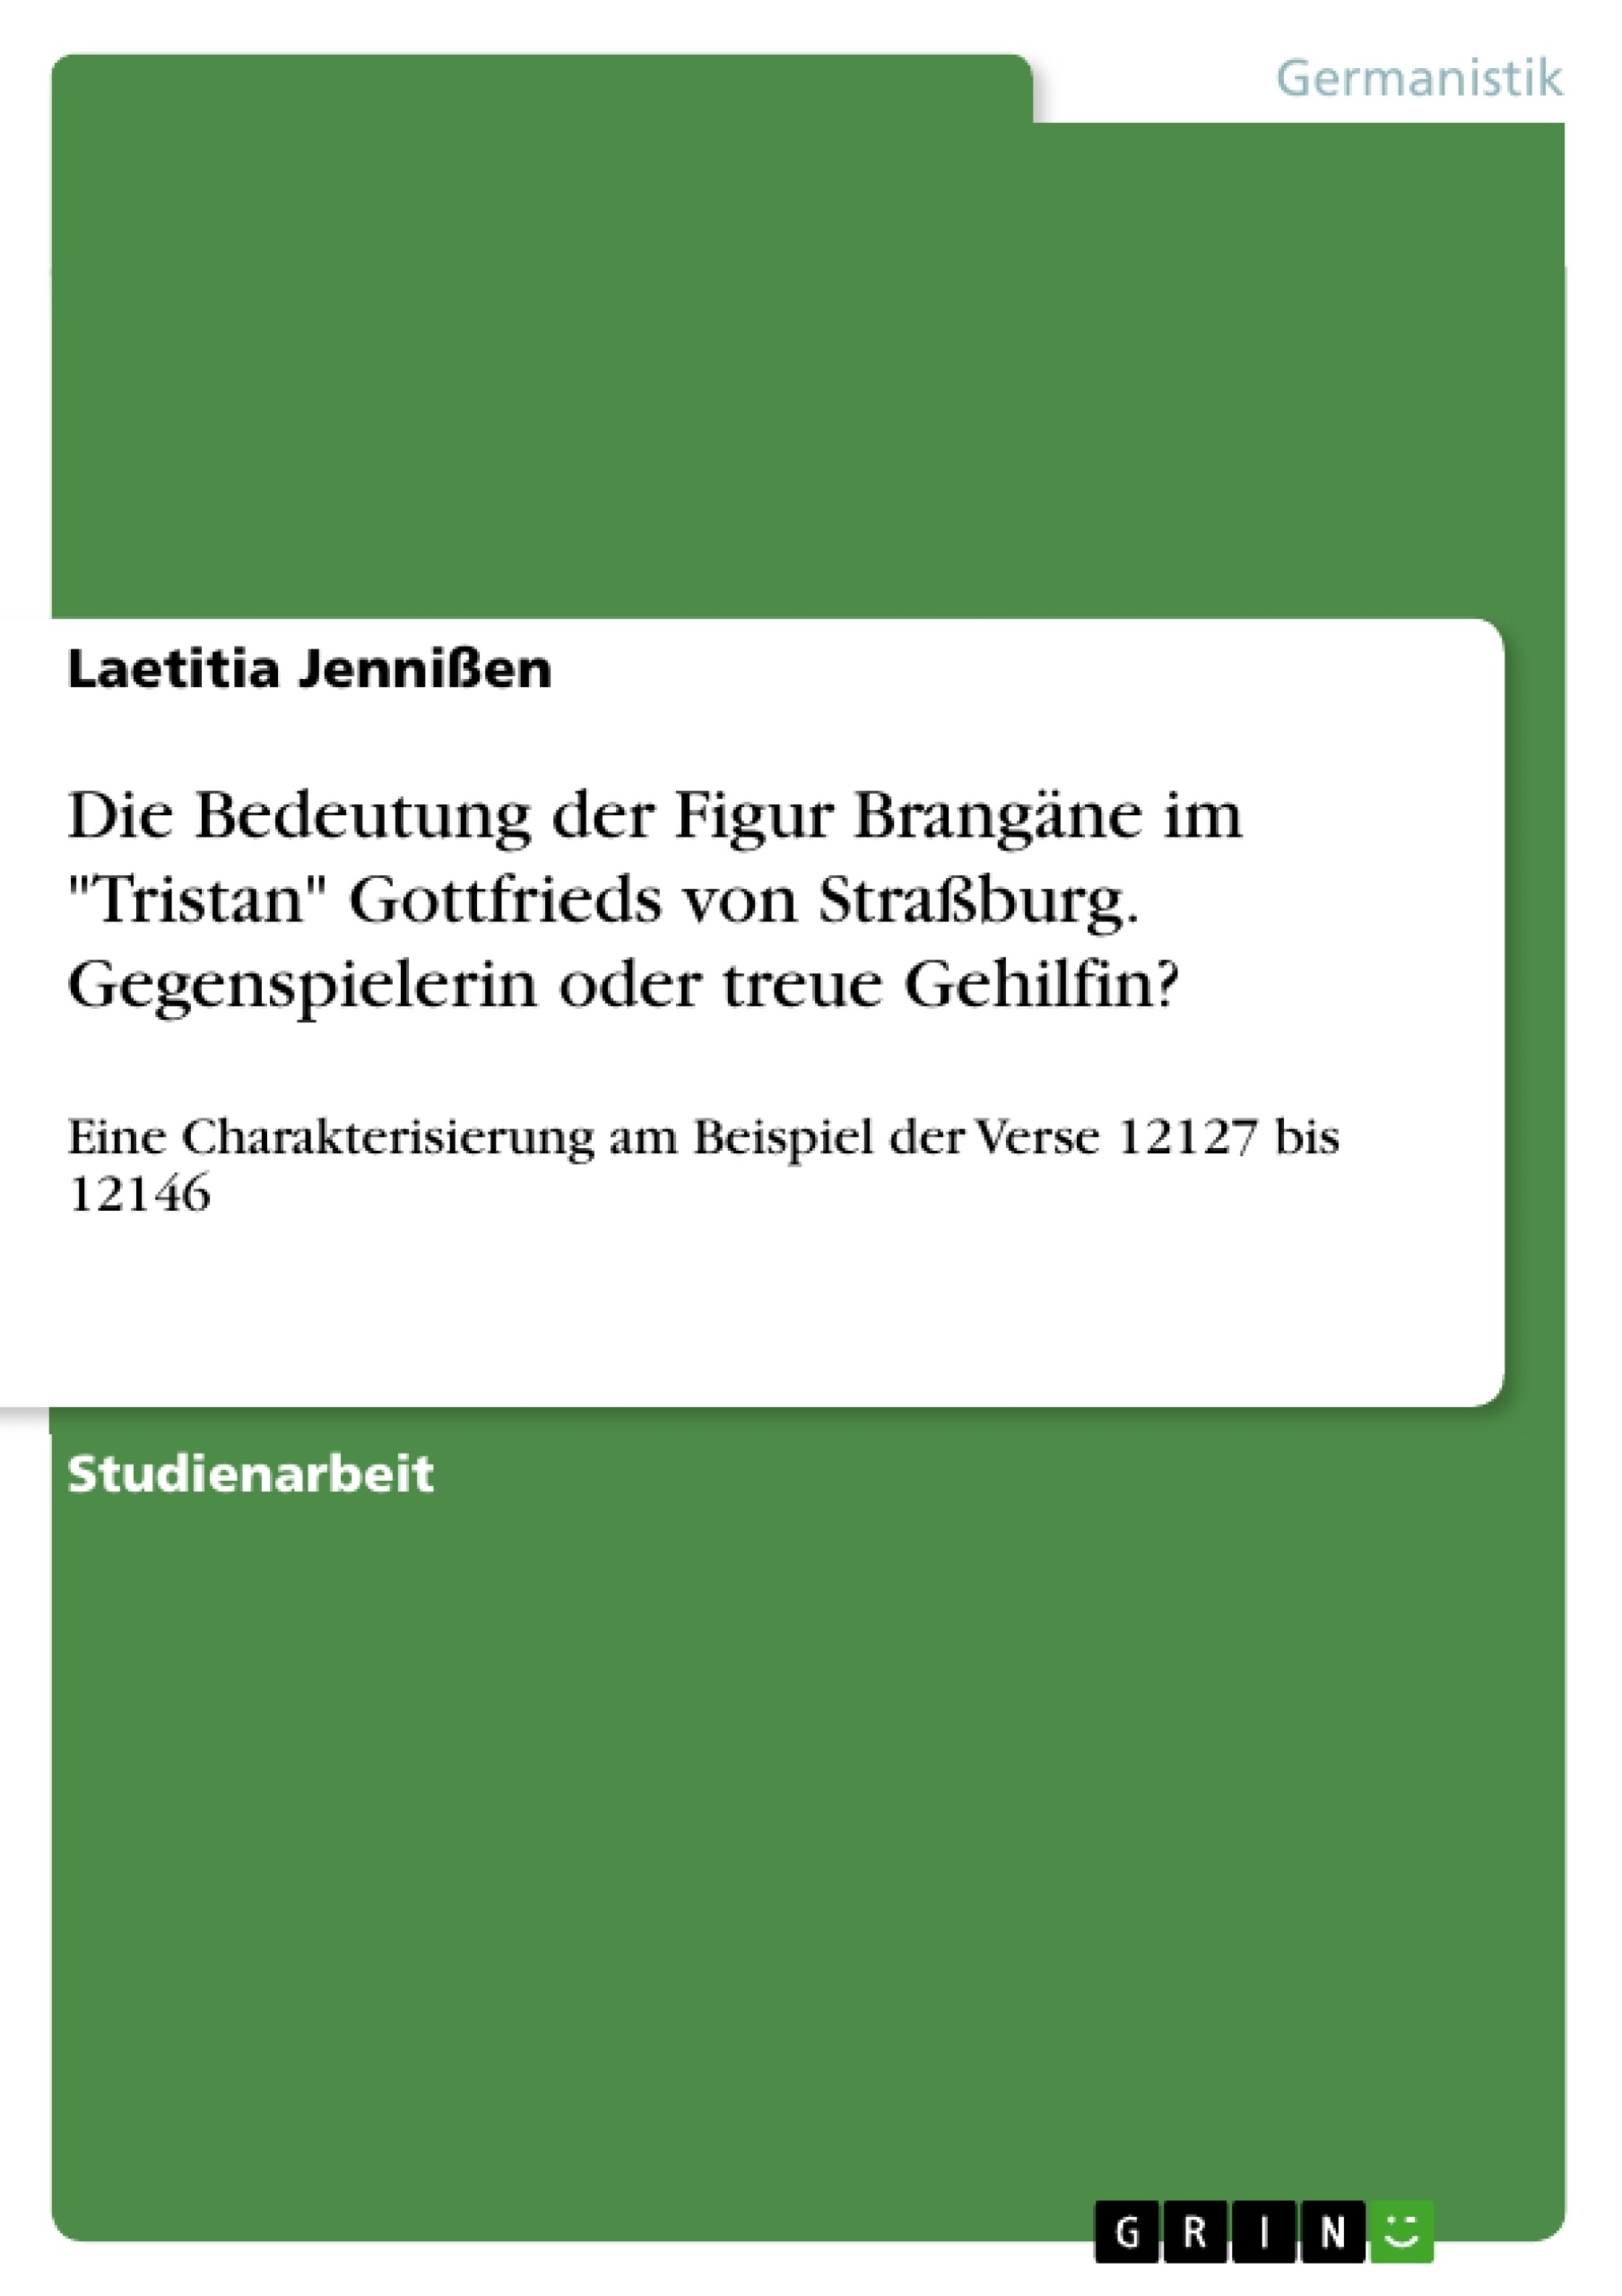 Título: Die Bedeutung der Figur Brangäne im "Tristan" Gottfrieds von Straßburg. Gegenspielerin oder treue Gehilfin?